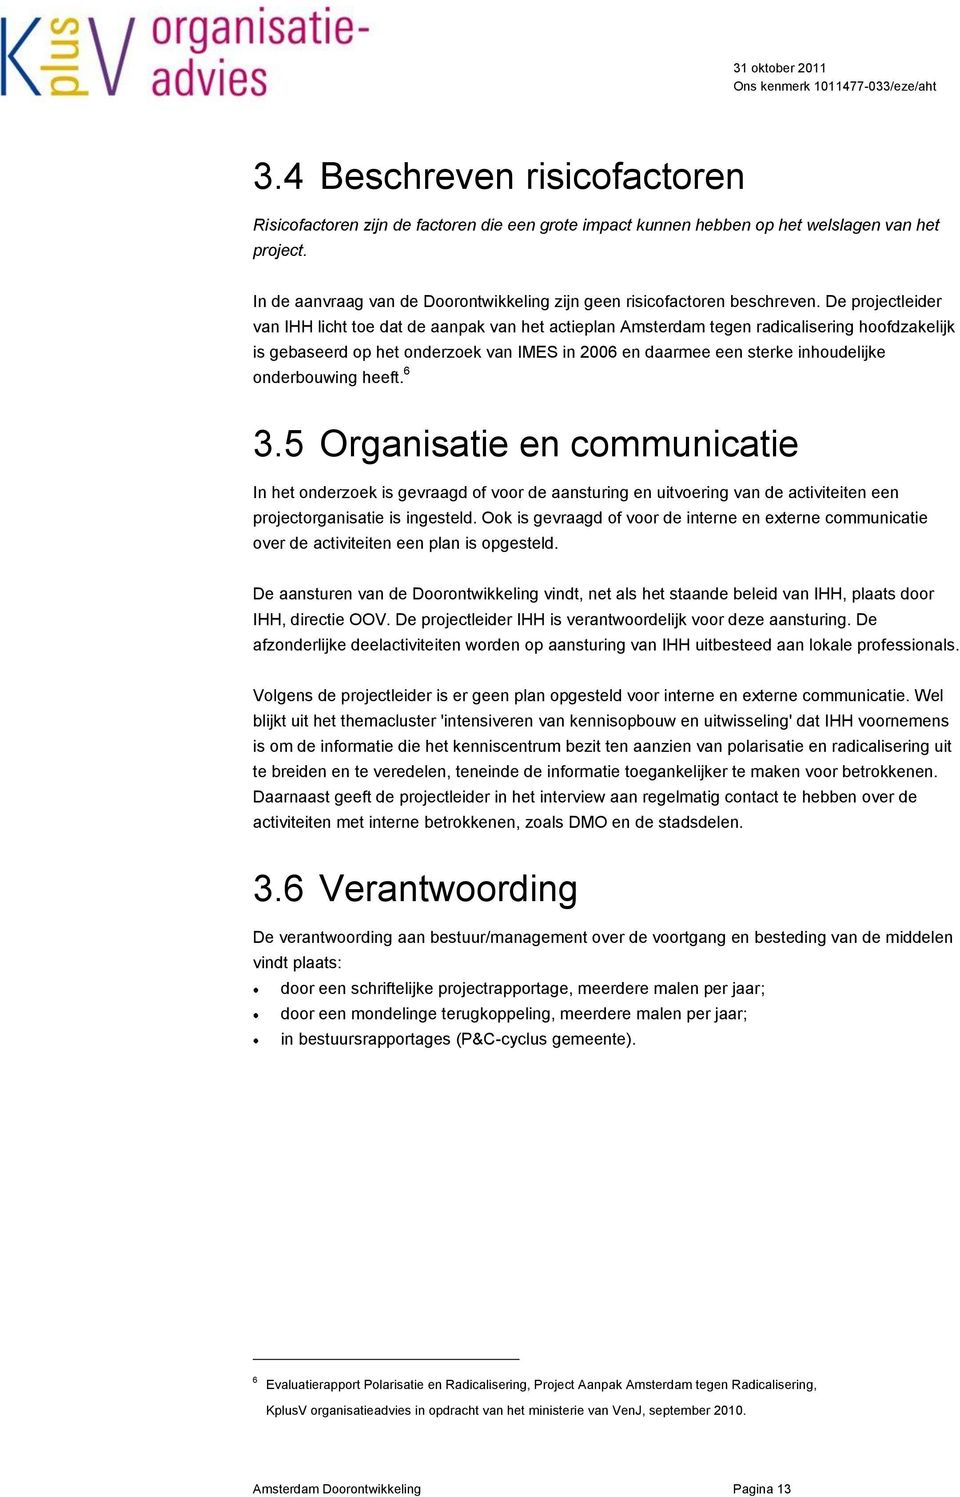 De projectleider van IHH licht toe dat de aanpak van het actieplan Amsterdam tegen radicalisering hoofdzakelijk is gebaseerd op het onderzoek van IMES in 2006 en daarmee een sterke inhoudelijke